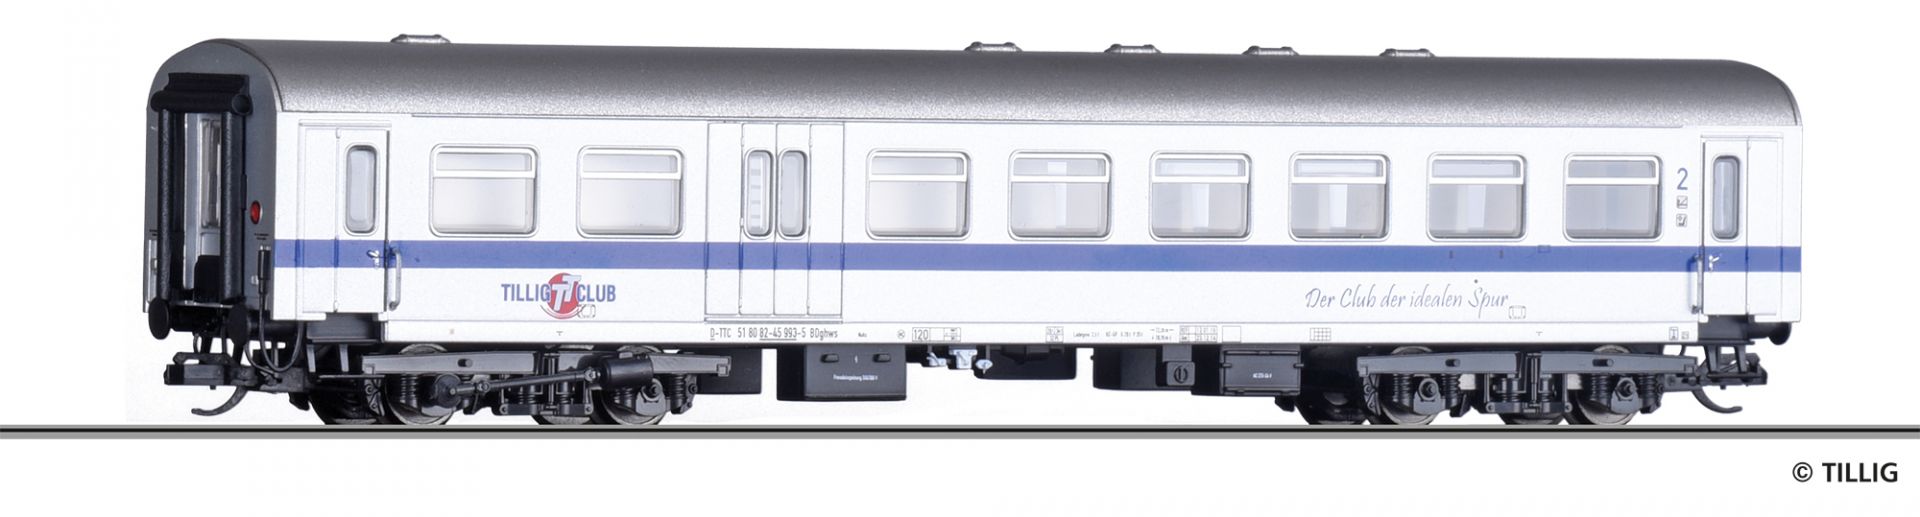 502207 | Reisezugwagen TTC -werksseitig ausverkauft-